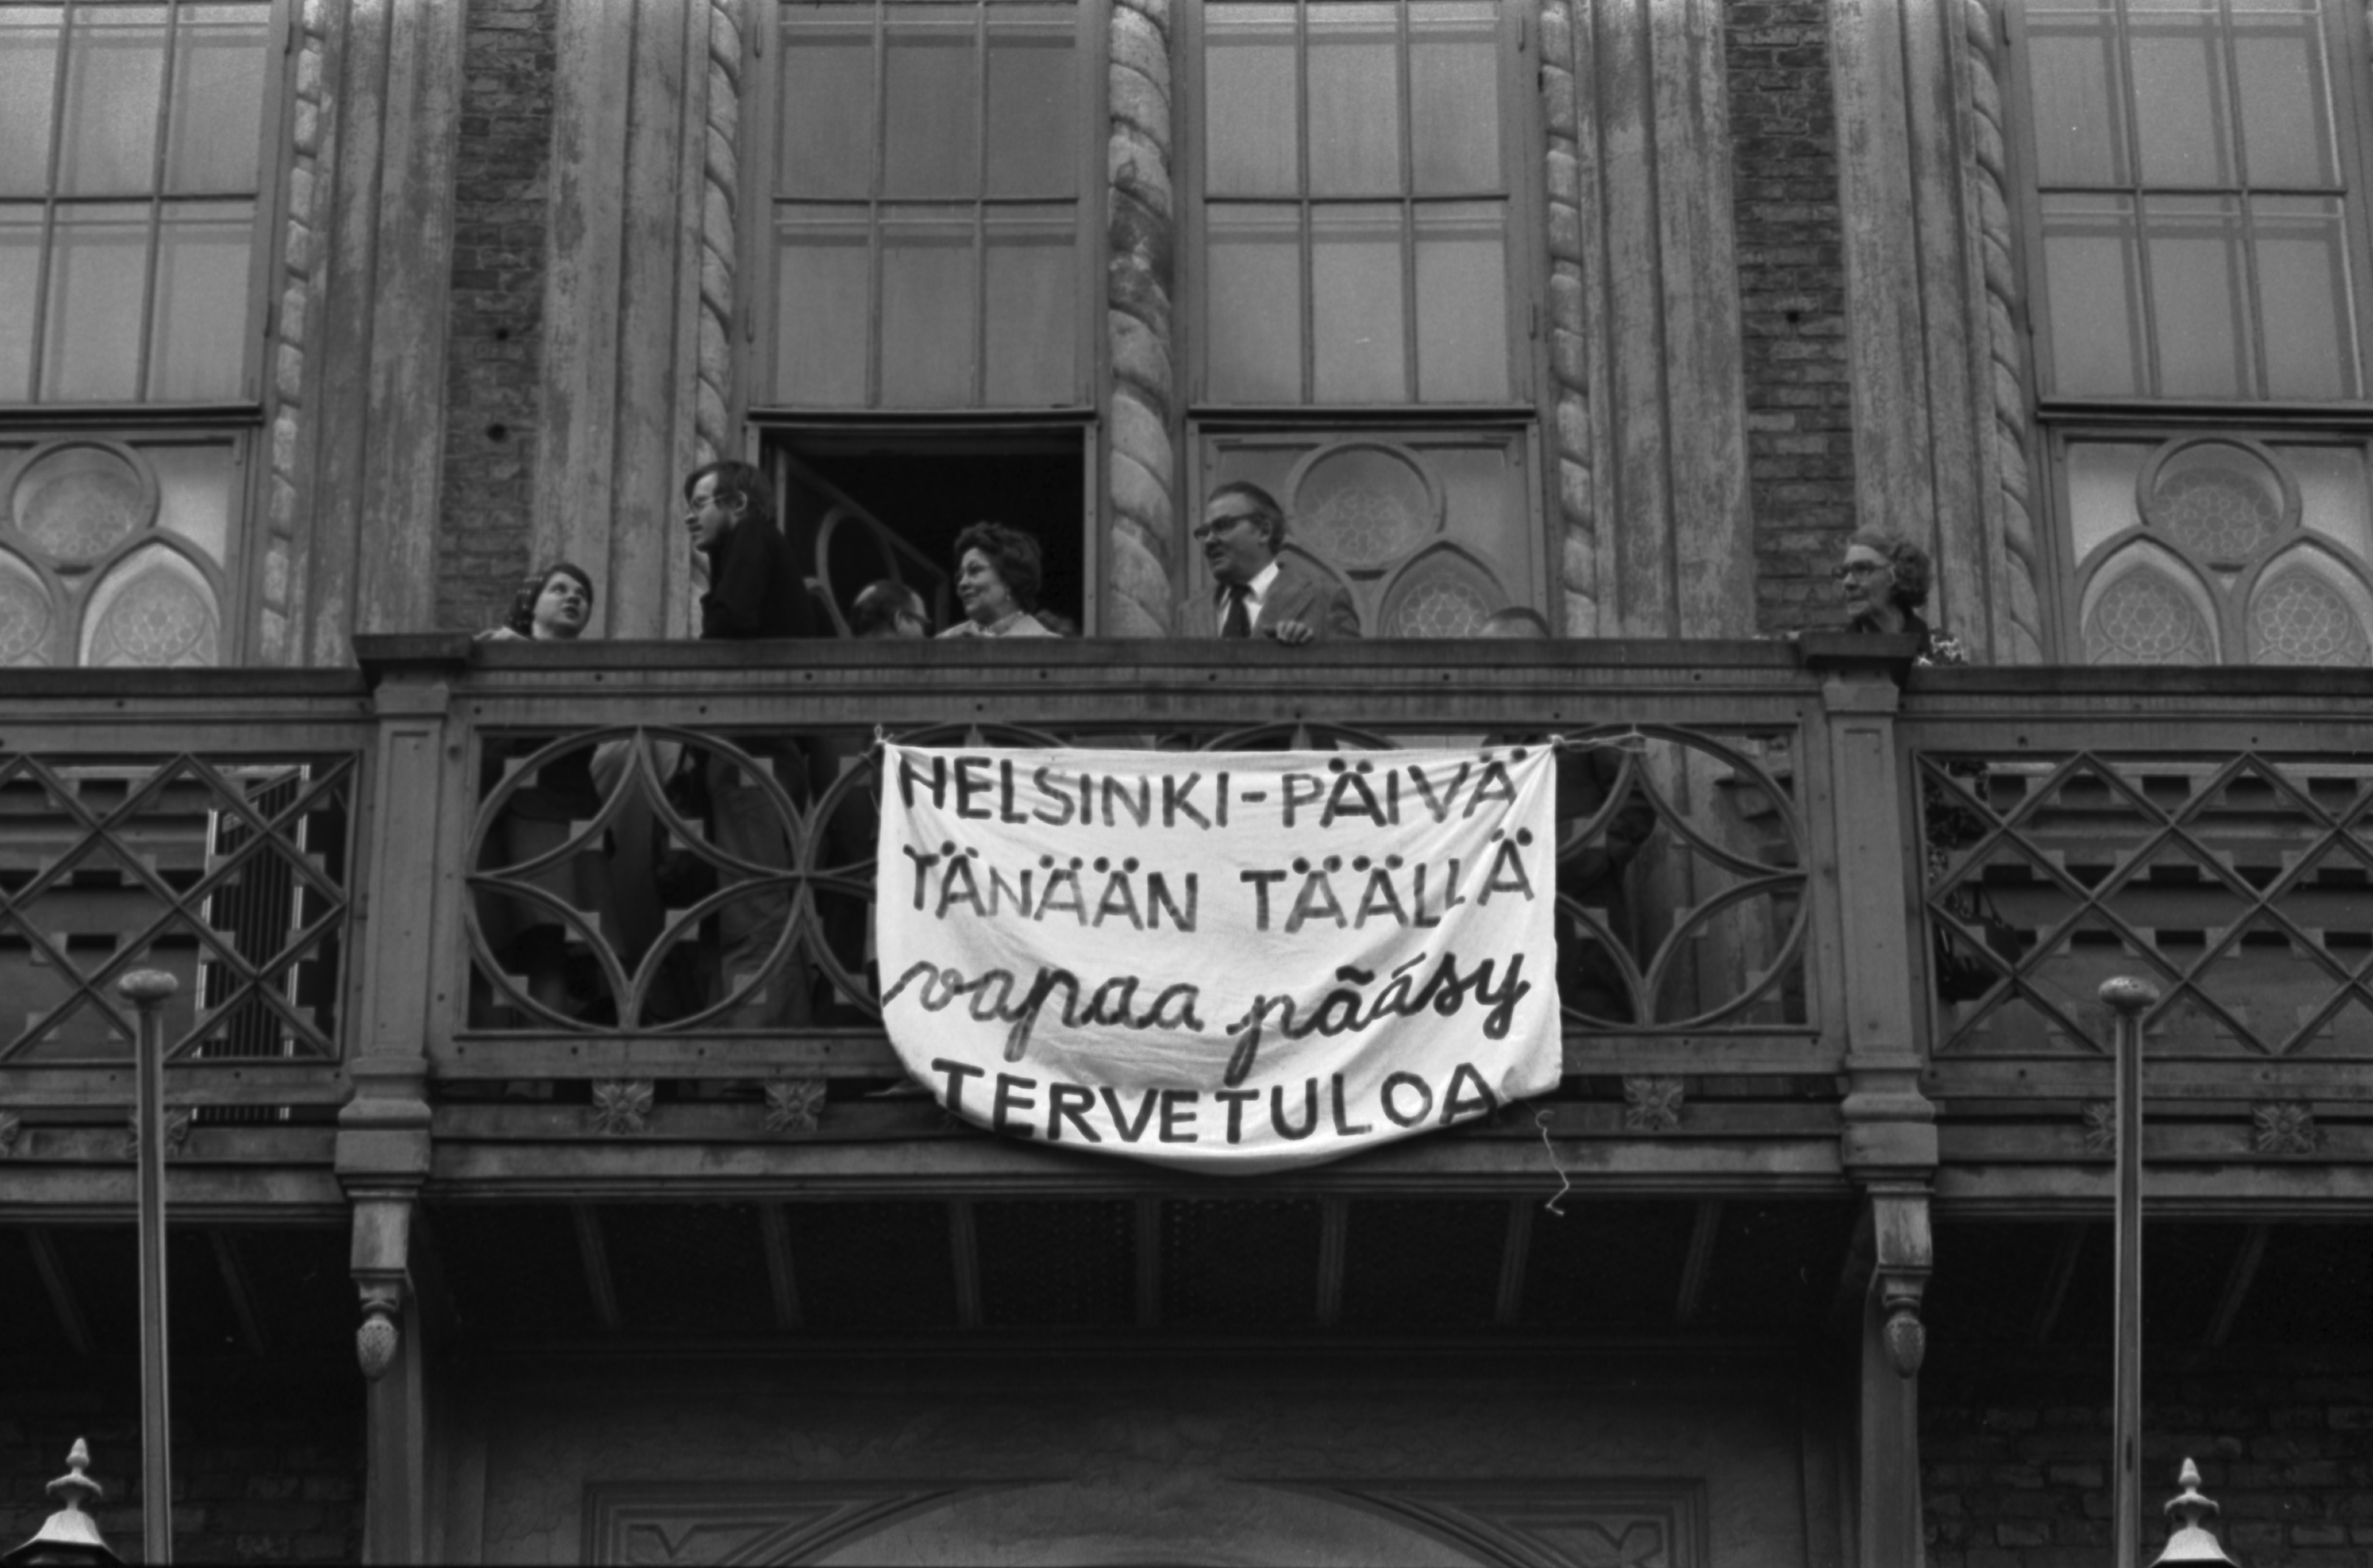 Ritarikatu 1. Helsinki-päivä tänään täällä - vapaa pääsy - Tervetuloa -teksti Ritarihuoneen parvekkeen kaiteessa Kruununhaan asukasyhdistyksen järjestämässä juhlassa Helsinki-päivänä 12.6.1975.